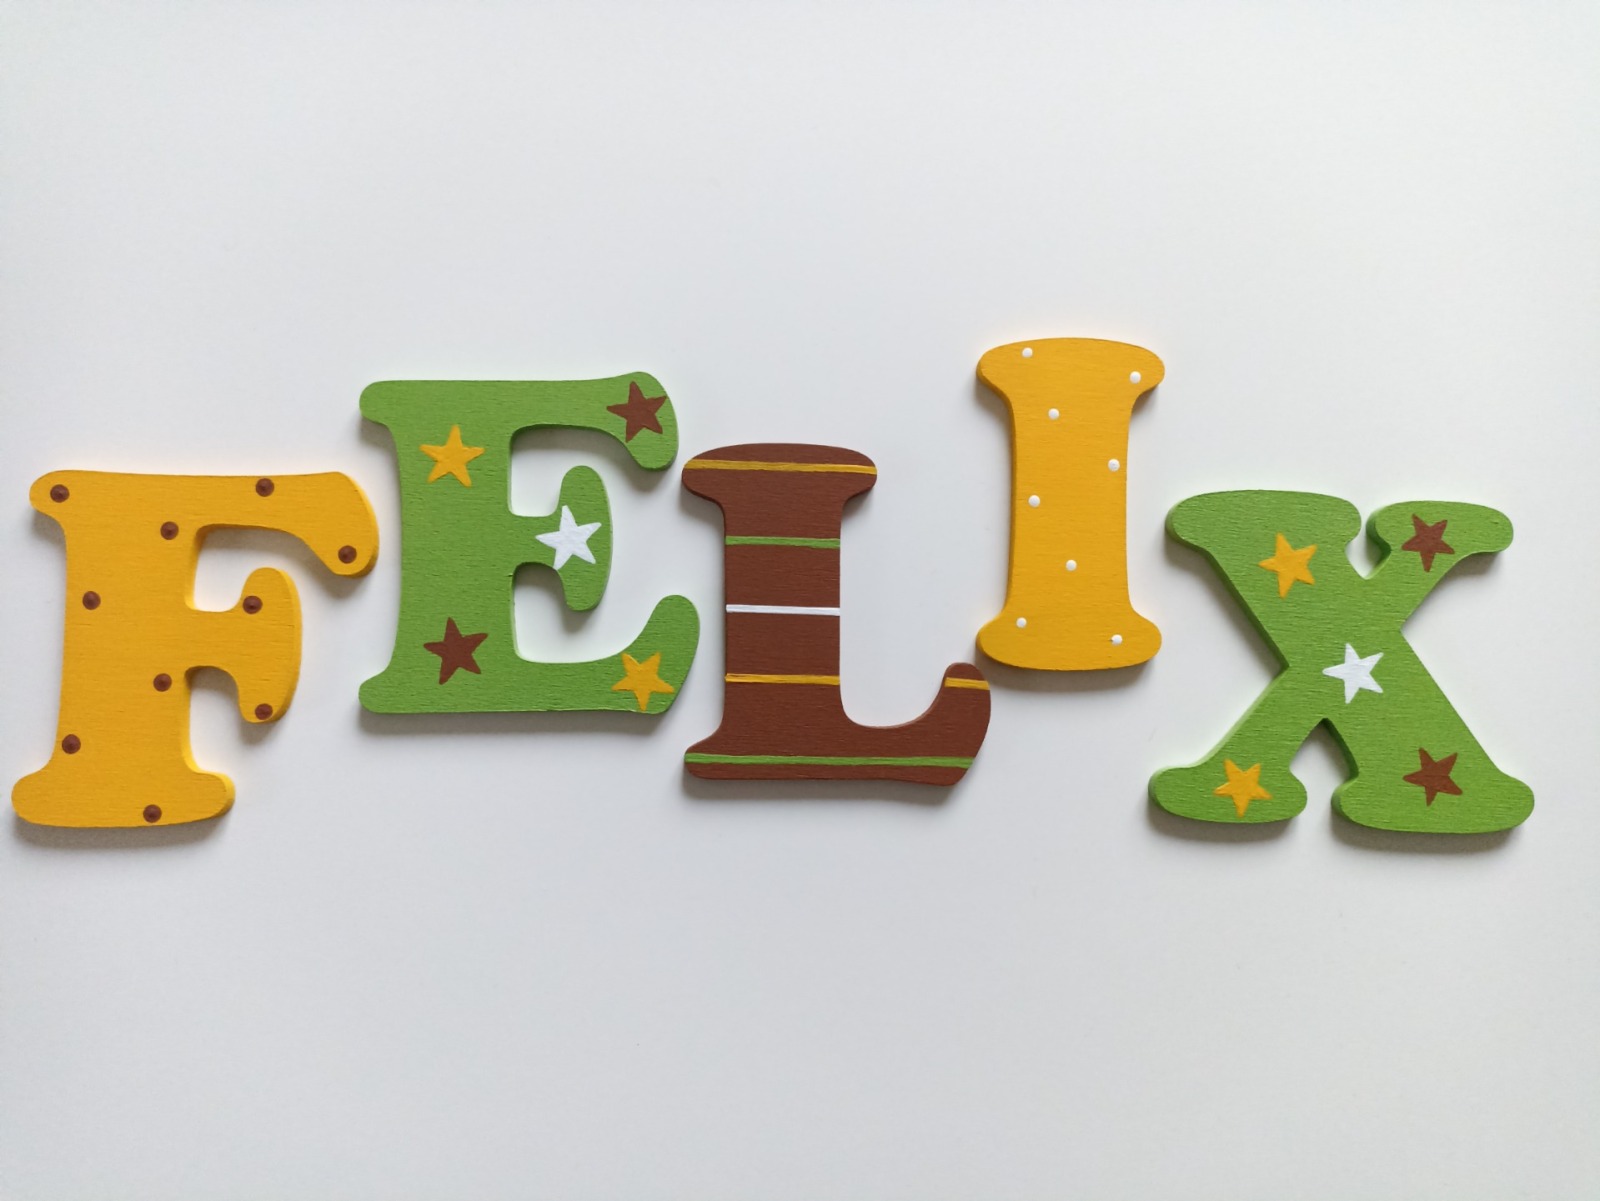 8cm Holzbuchstaben Kinderzimmer personalisiert in mittelgelb, braun und hellgrün